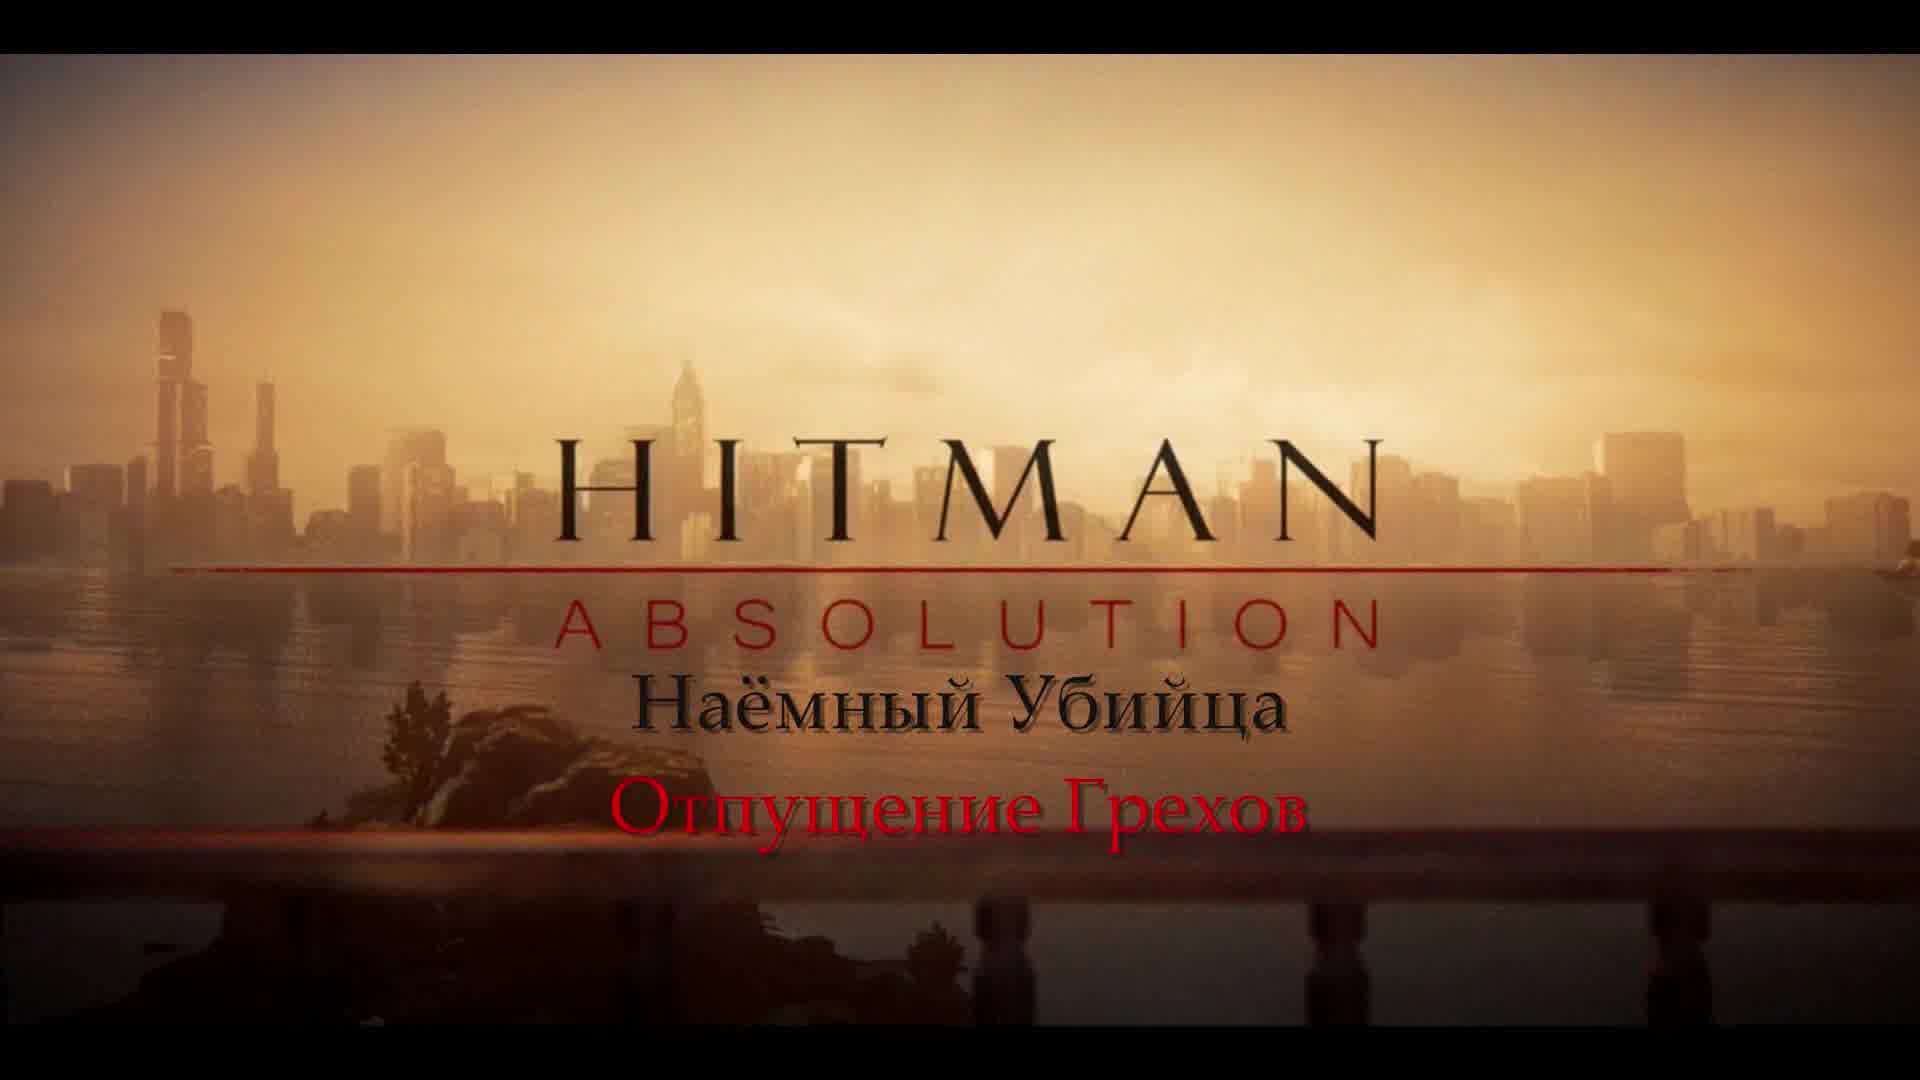 HITMAN Absolution - Полнометражный фильм